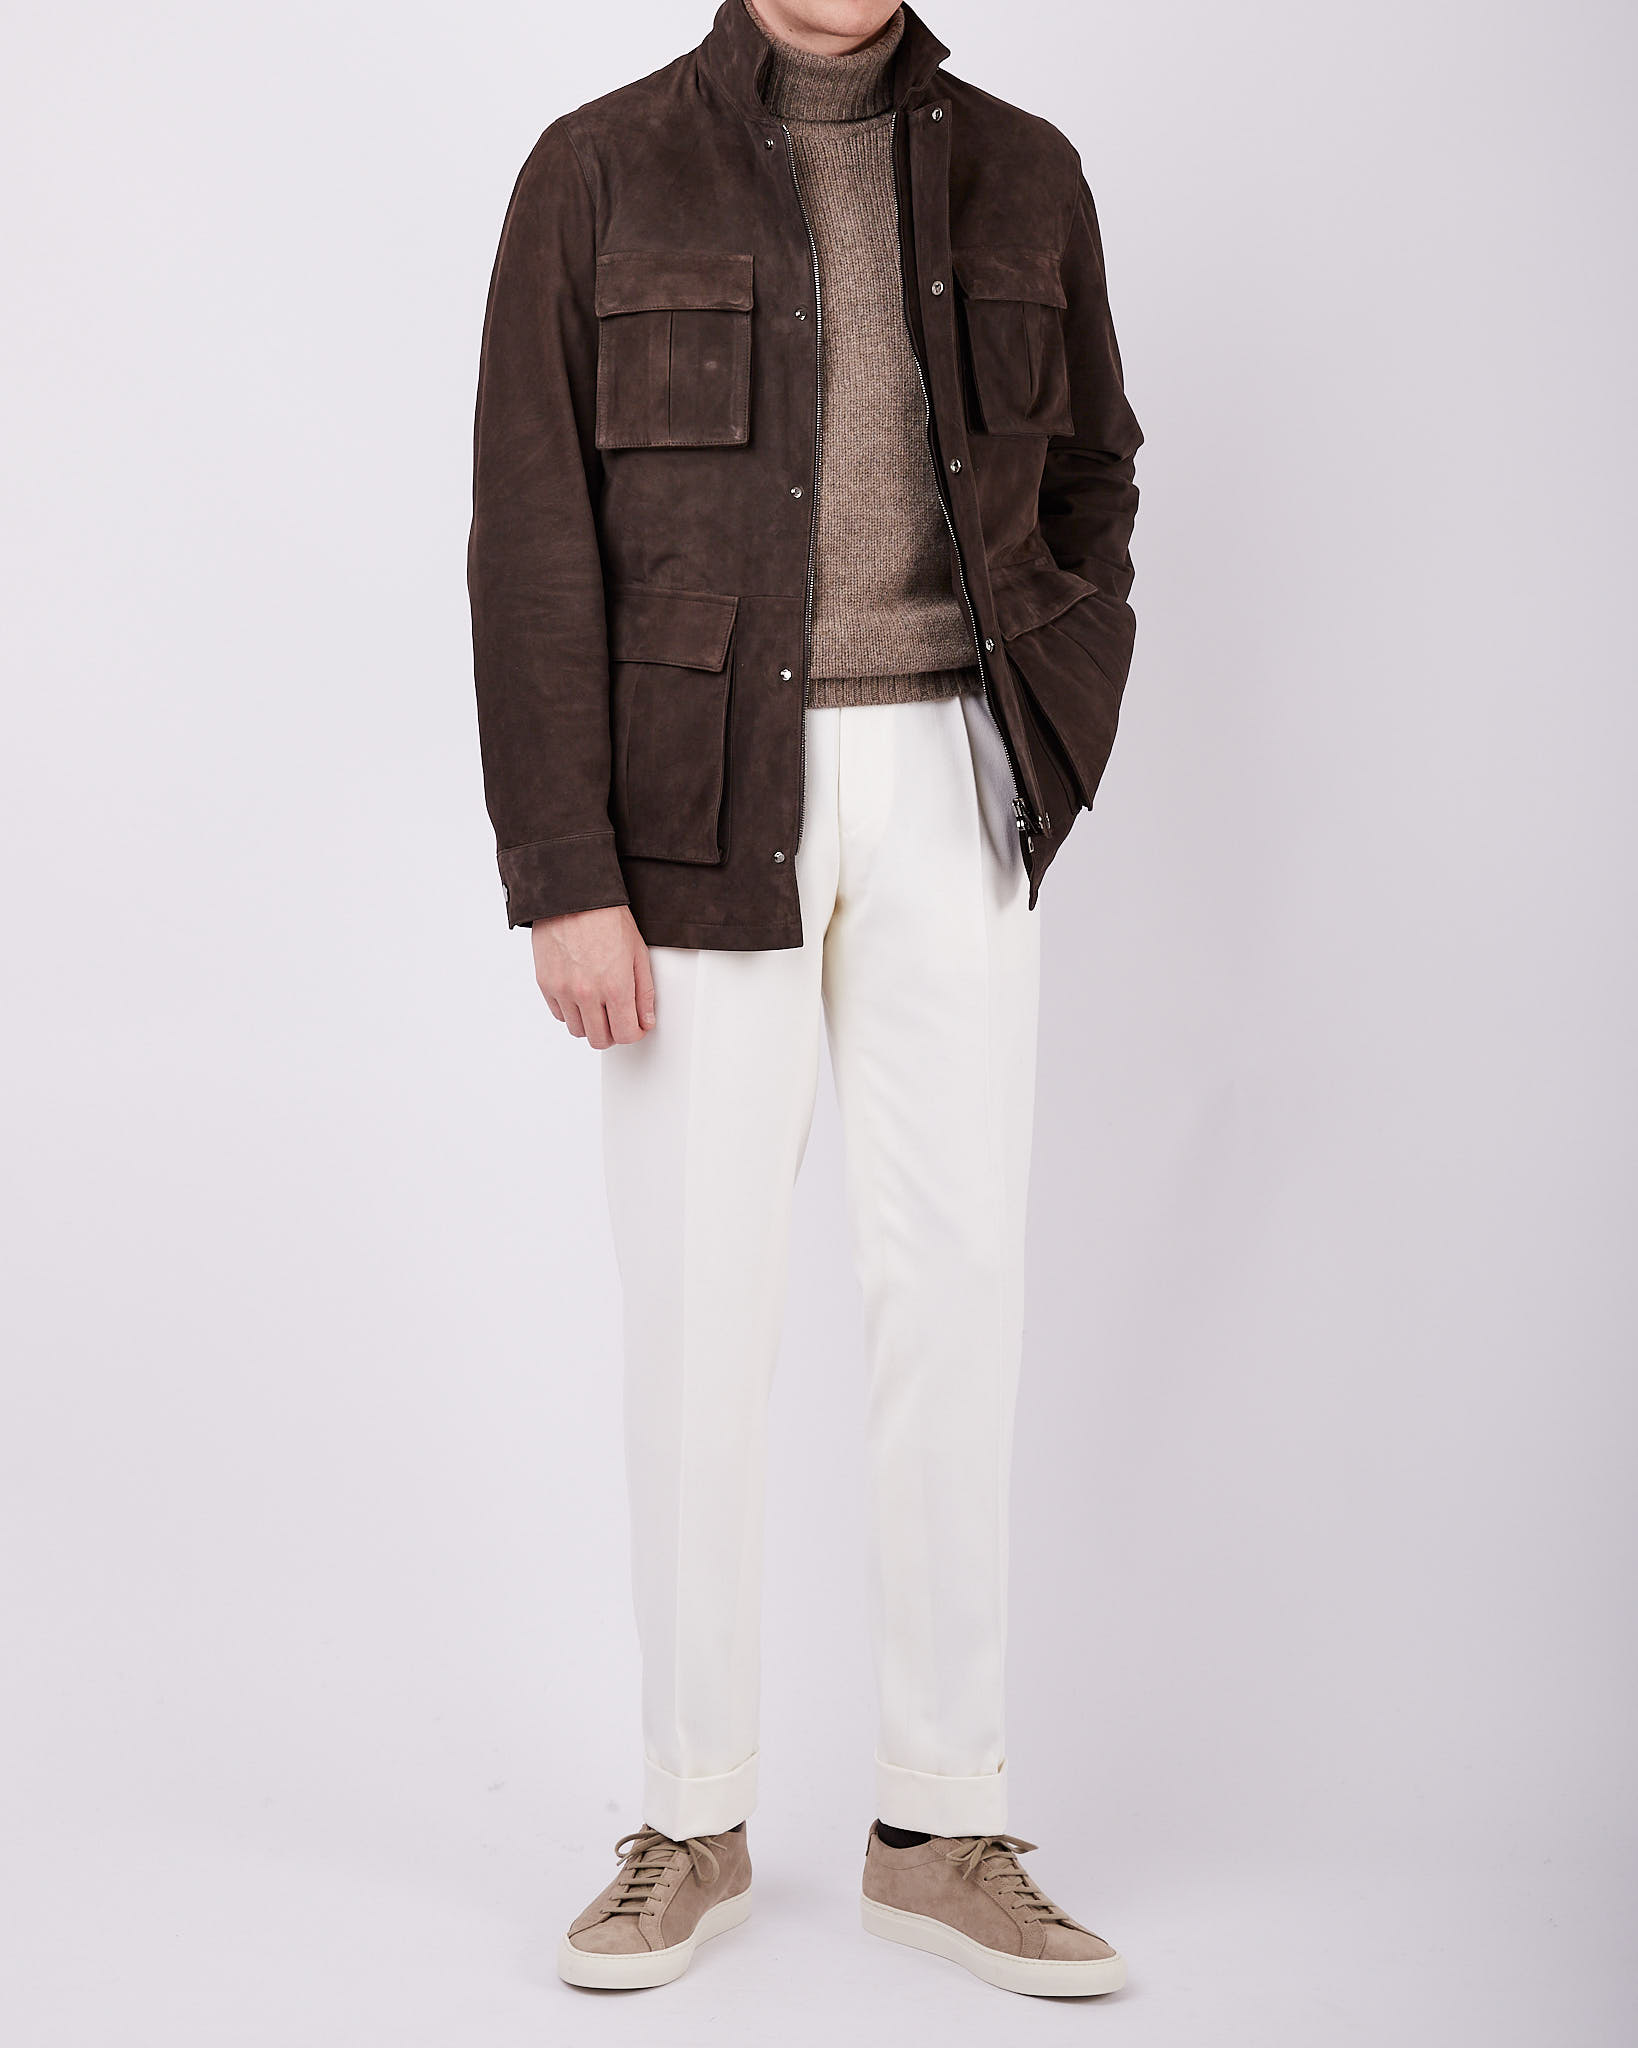 WOMEN FASHION Jackets Vest Knitted discount 52% Zara vest Brown M 